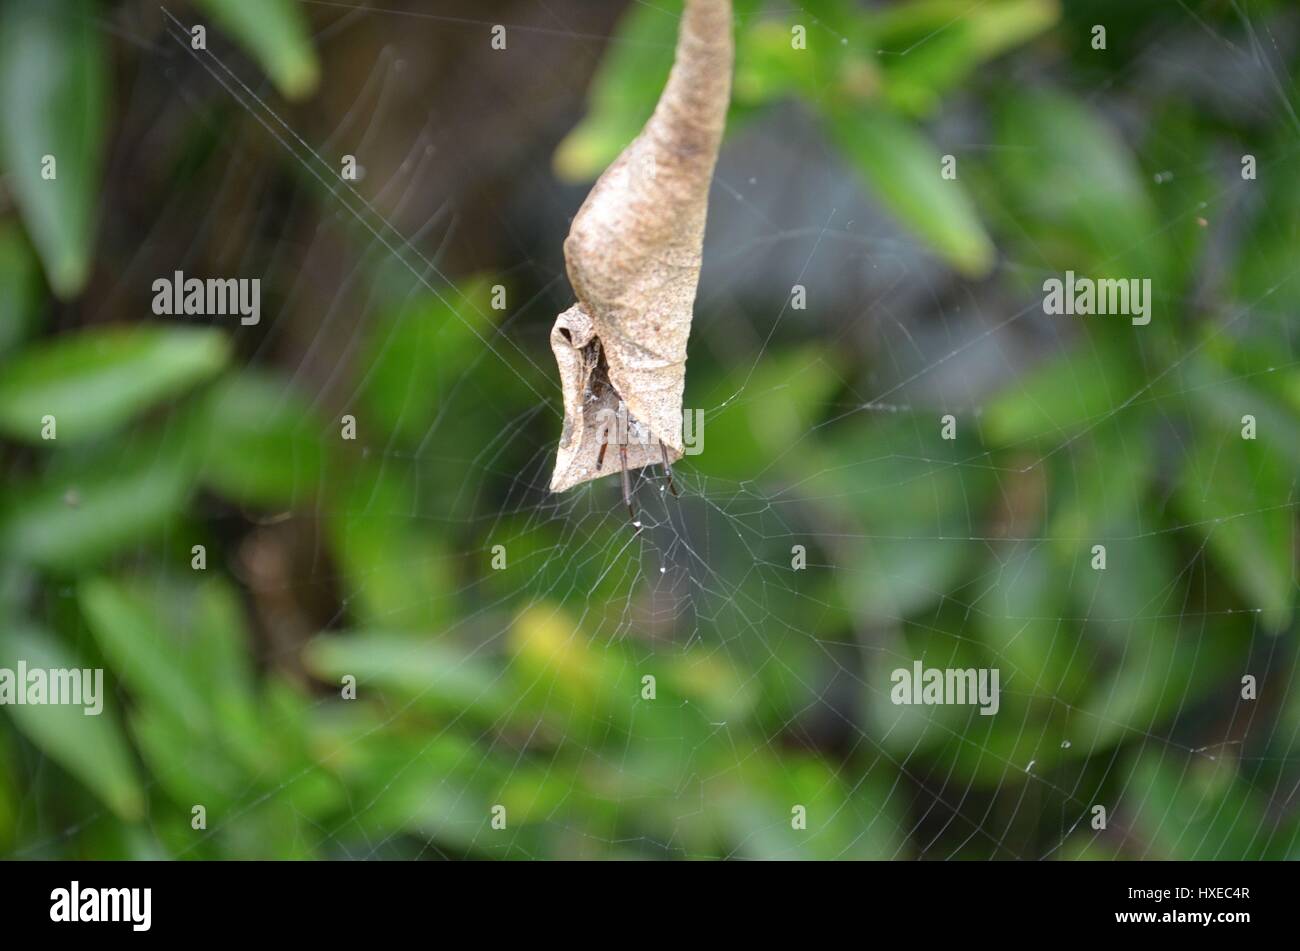 Foglia-curling spider comune per Australian cortili all'interno della foglia attaccata alla spider web Foto Stock